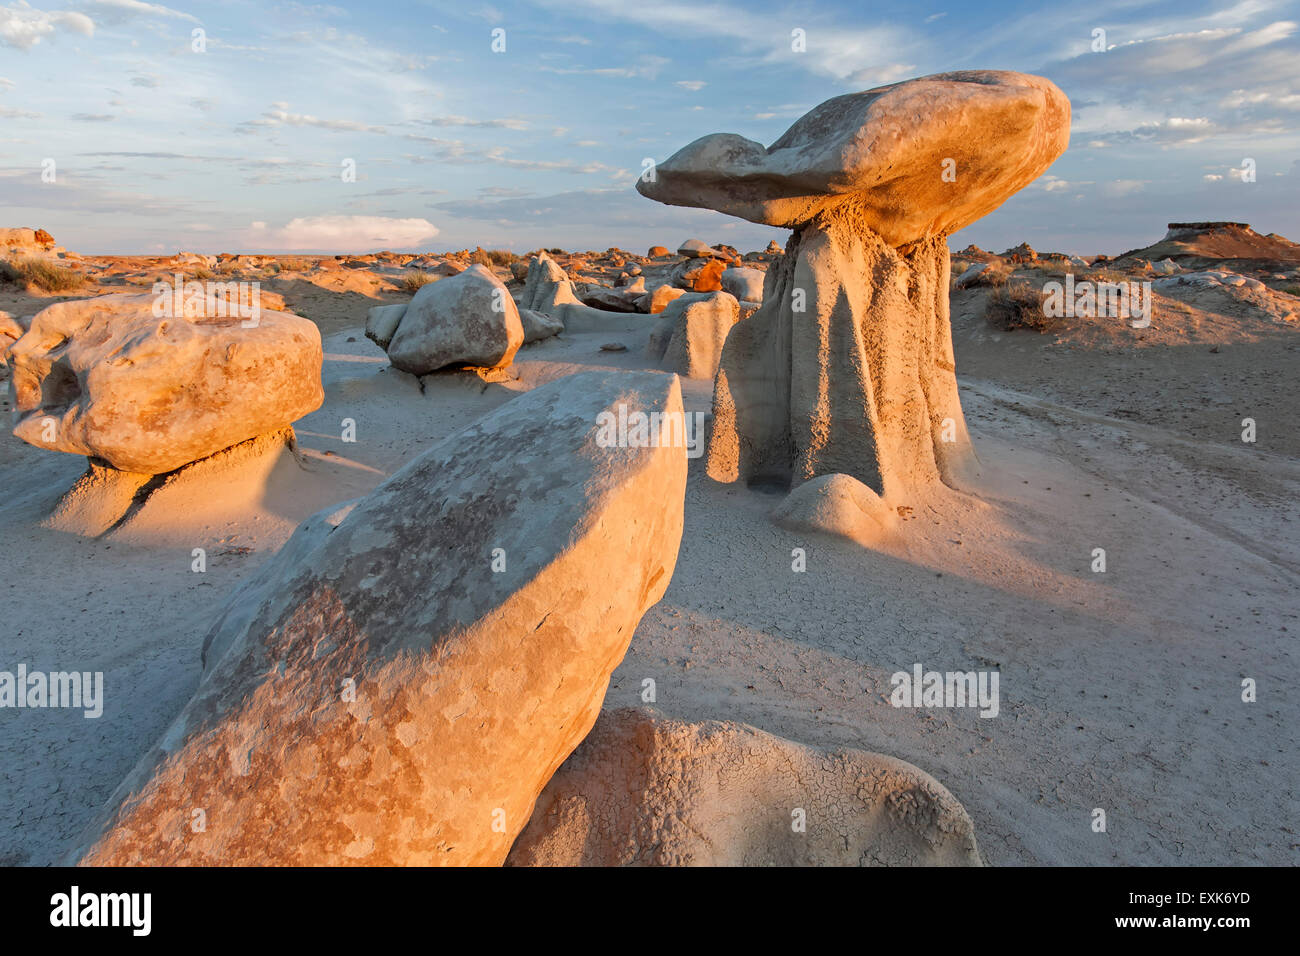 'Mushroom' rock y rocas, Bisti zona silvestre, Nuevo México, EE.UU. Foto de stock